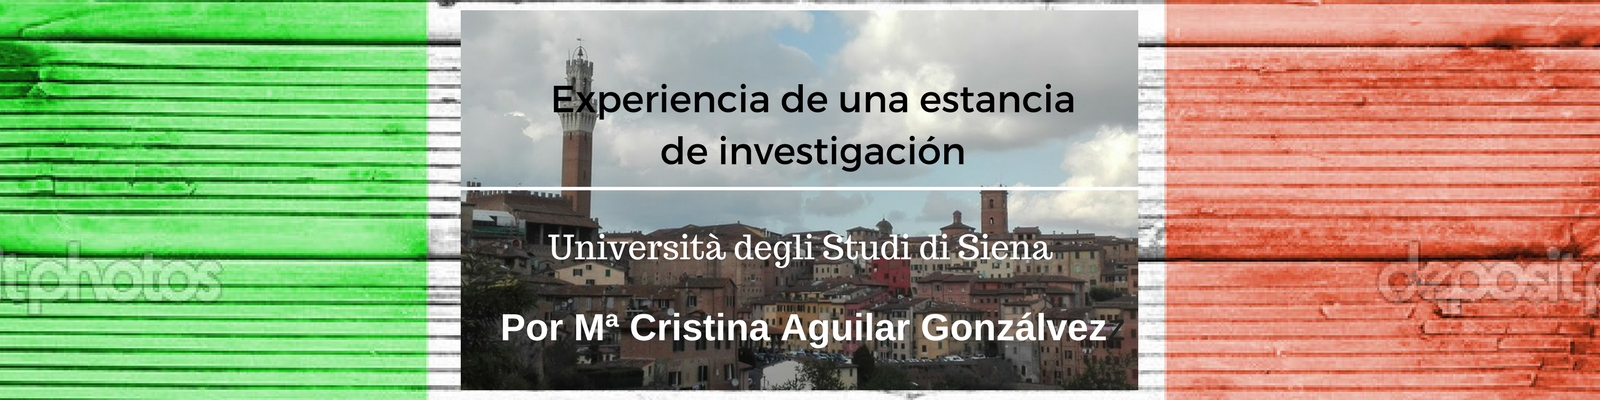 Experiencia de una estancia de investigación en la Università degli Studi di Siena. Por Mª Cristina Aguilar Gonzálvez